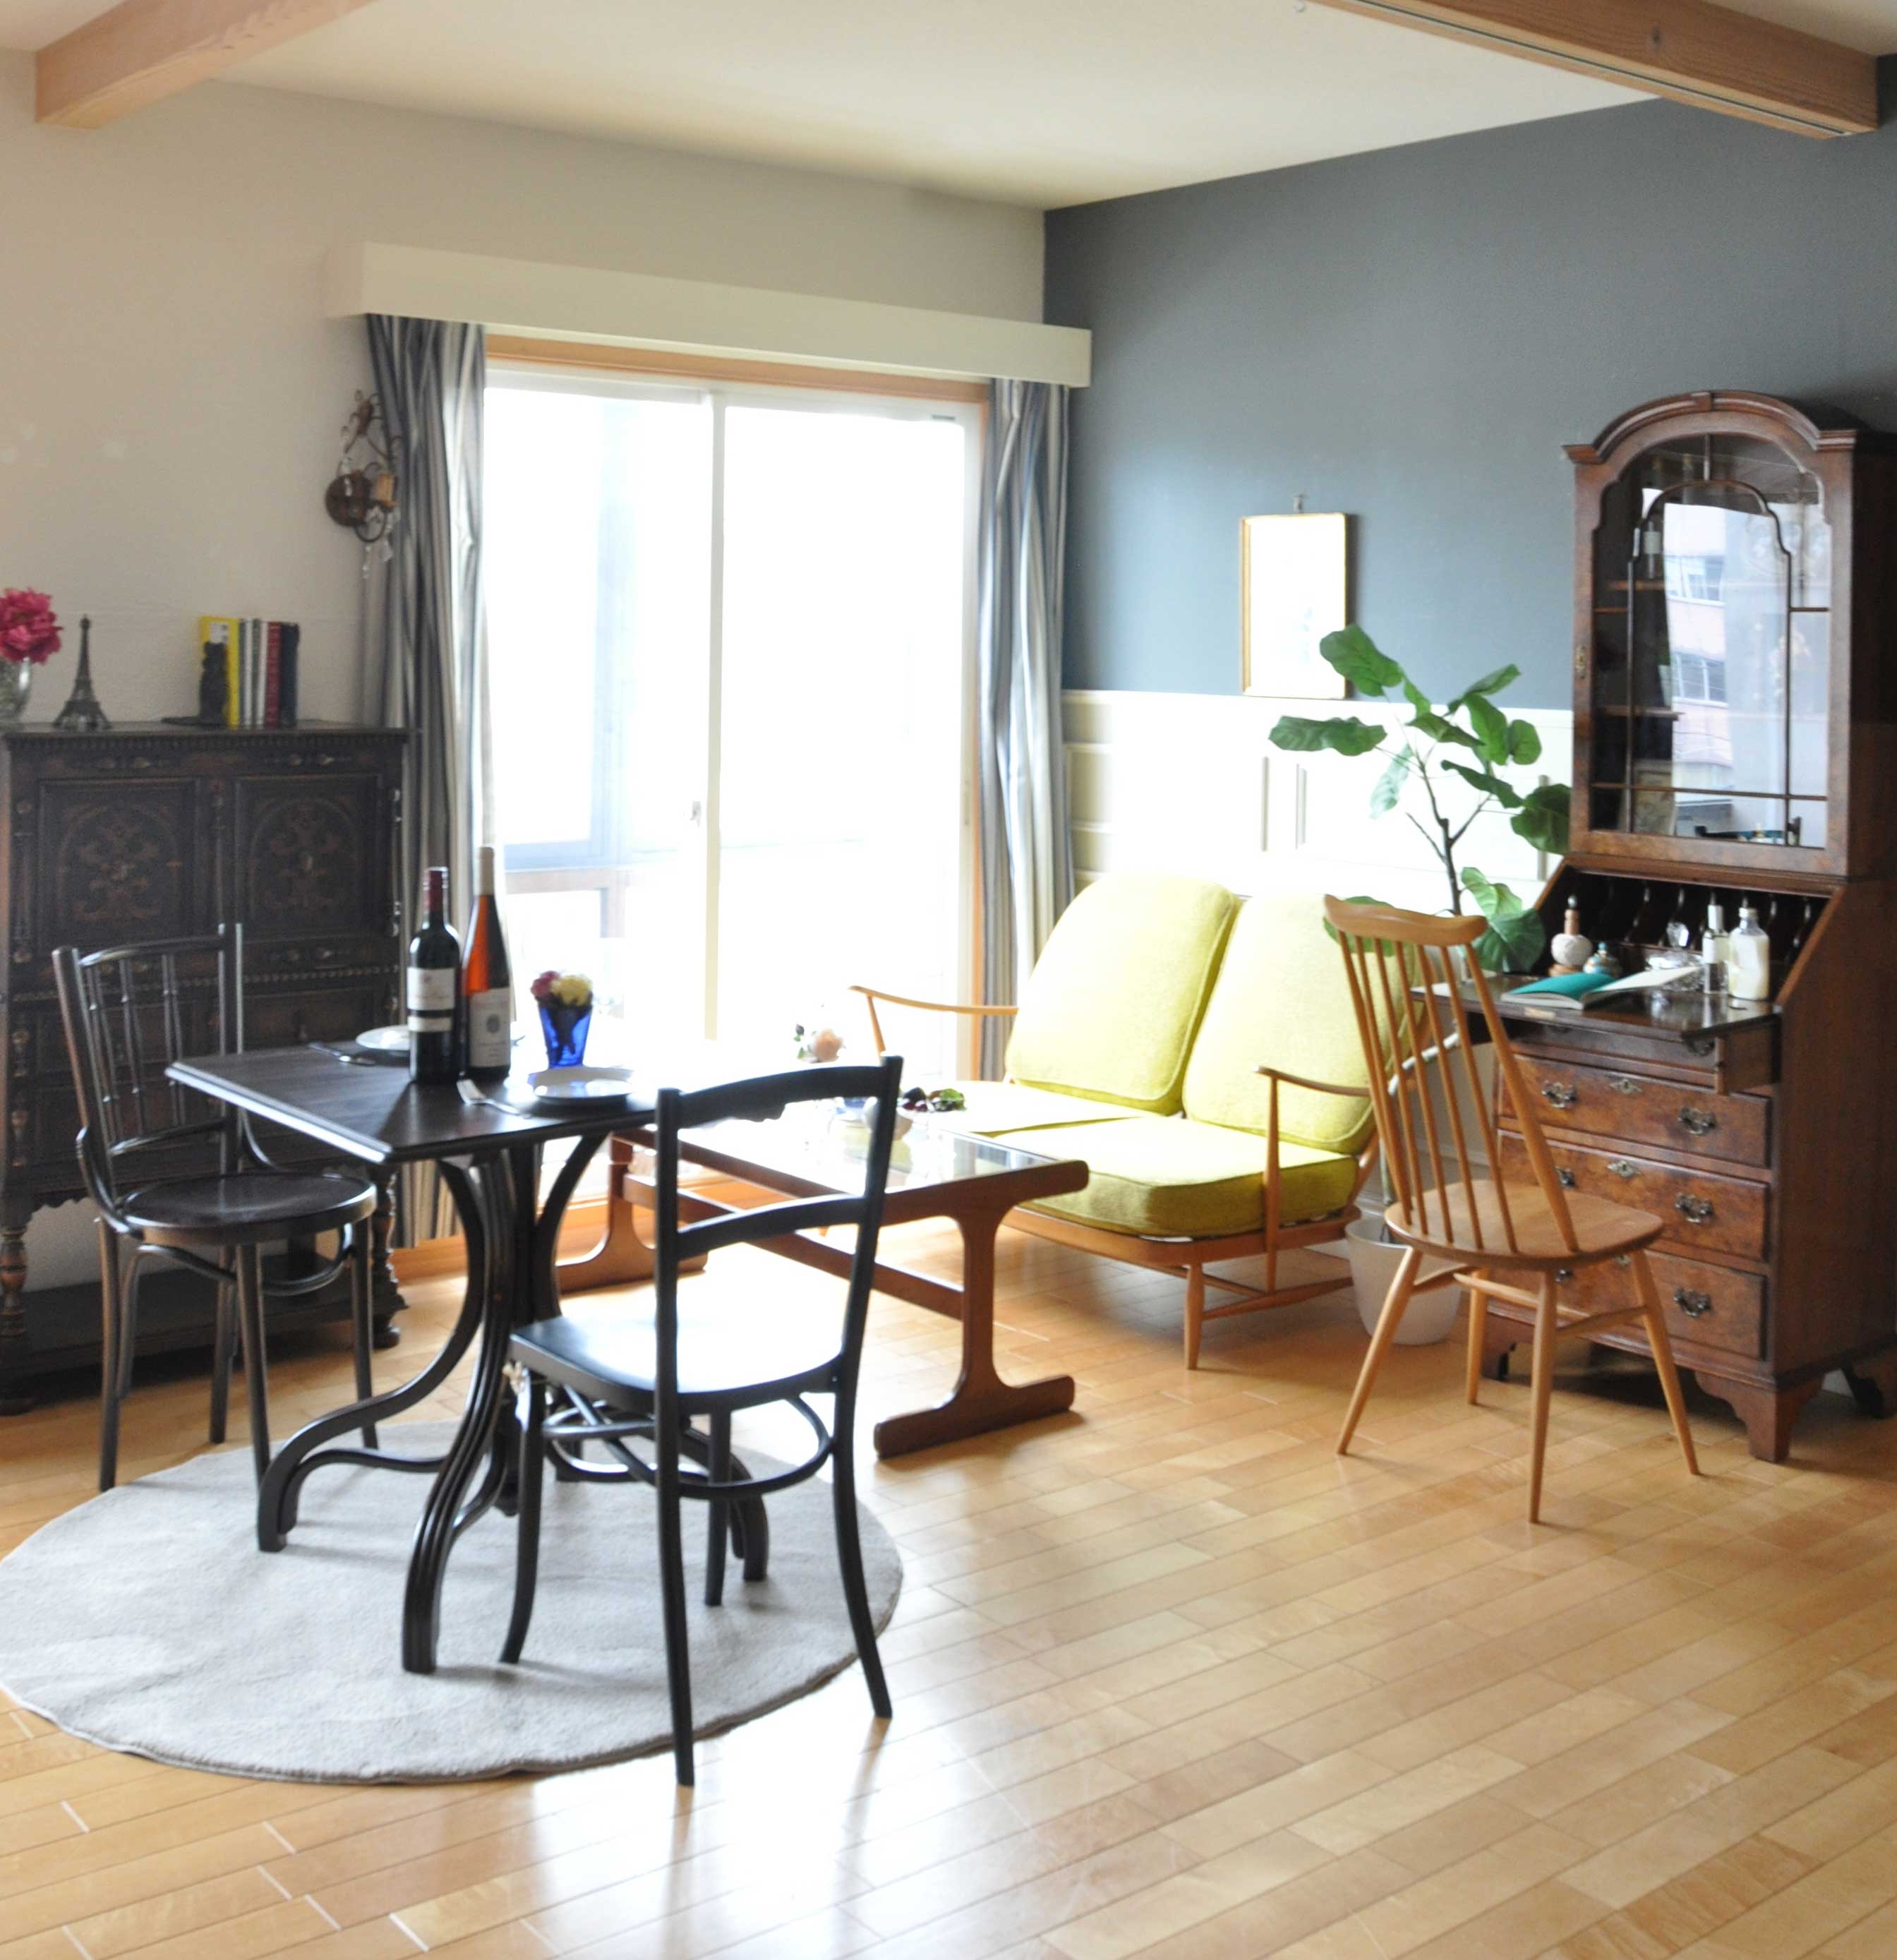 ハンドルスタイルのリビング | 家具の色で境界線を作った都会のマンションLDK